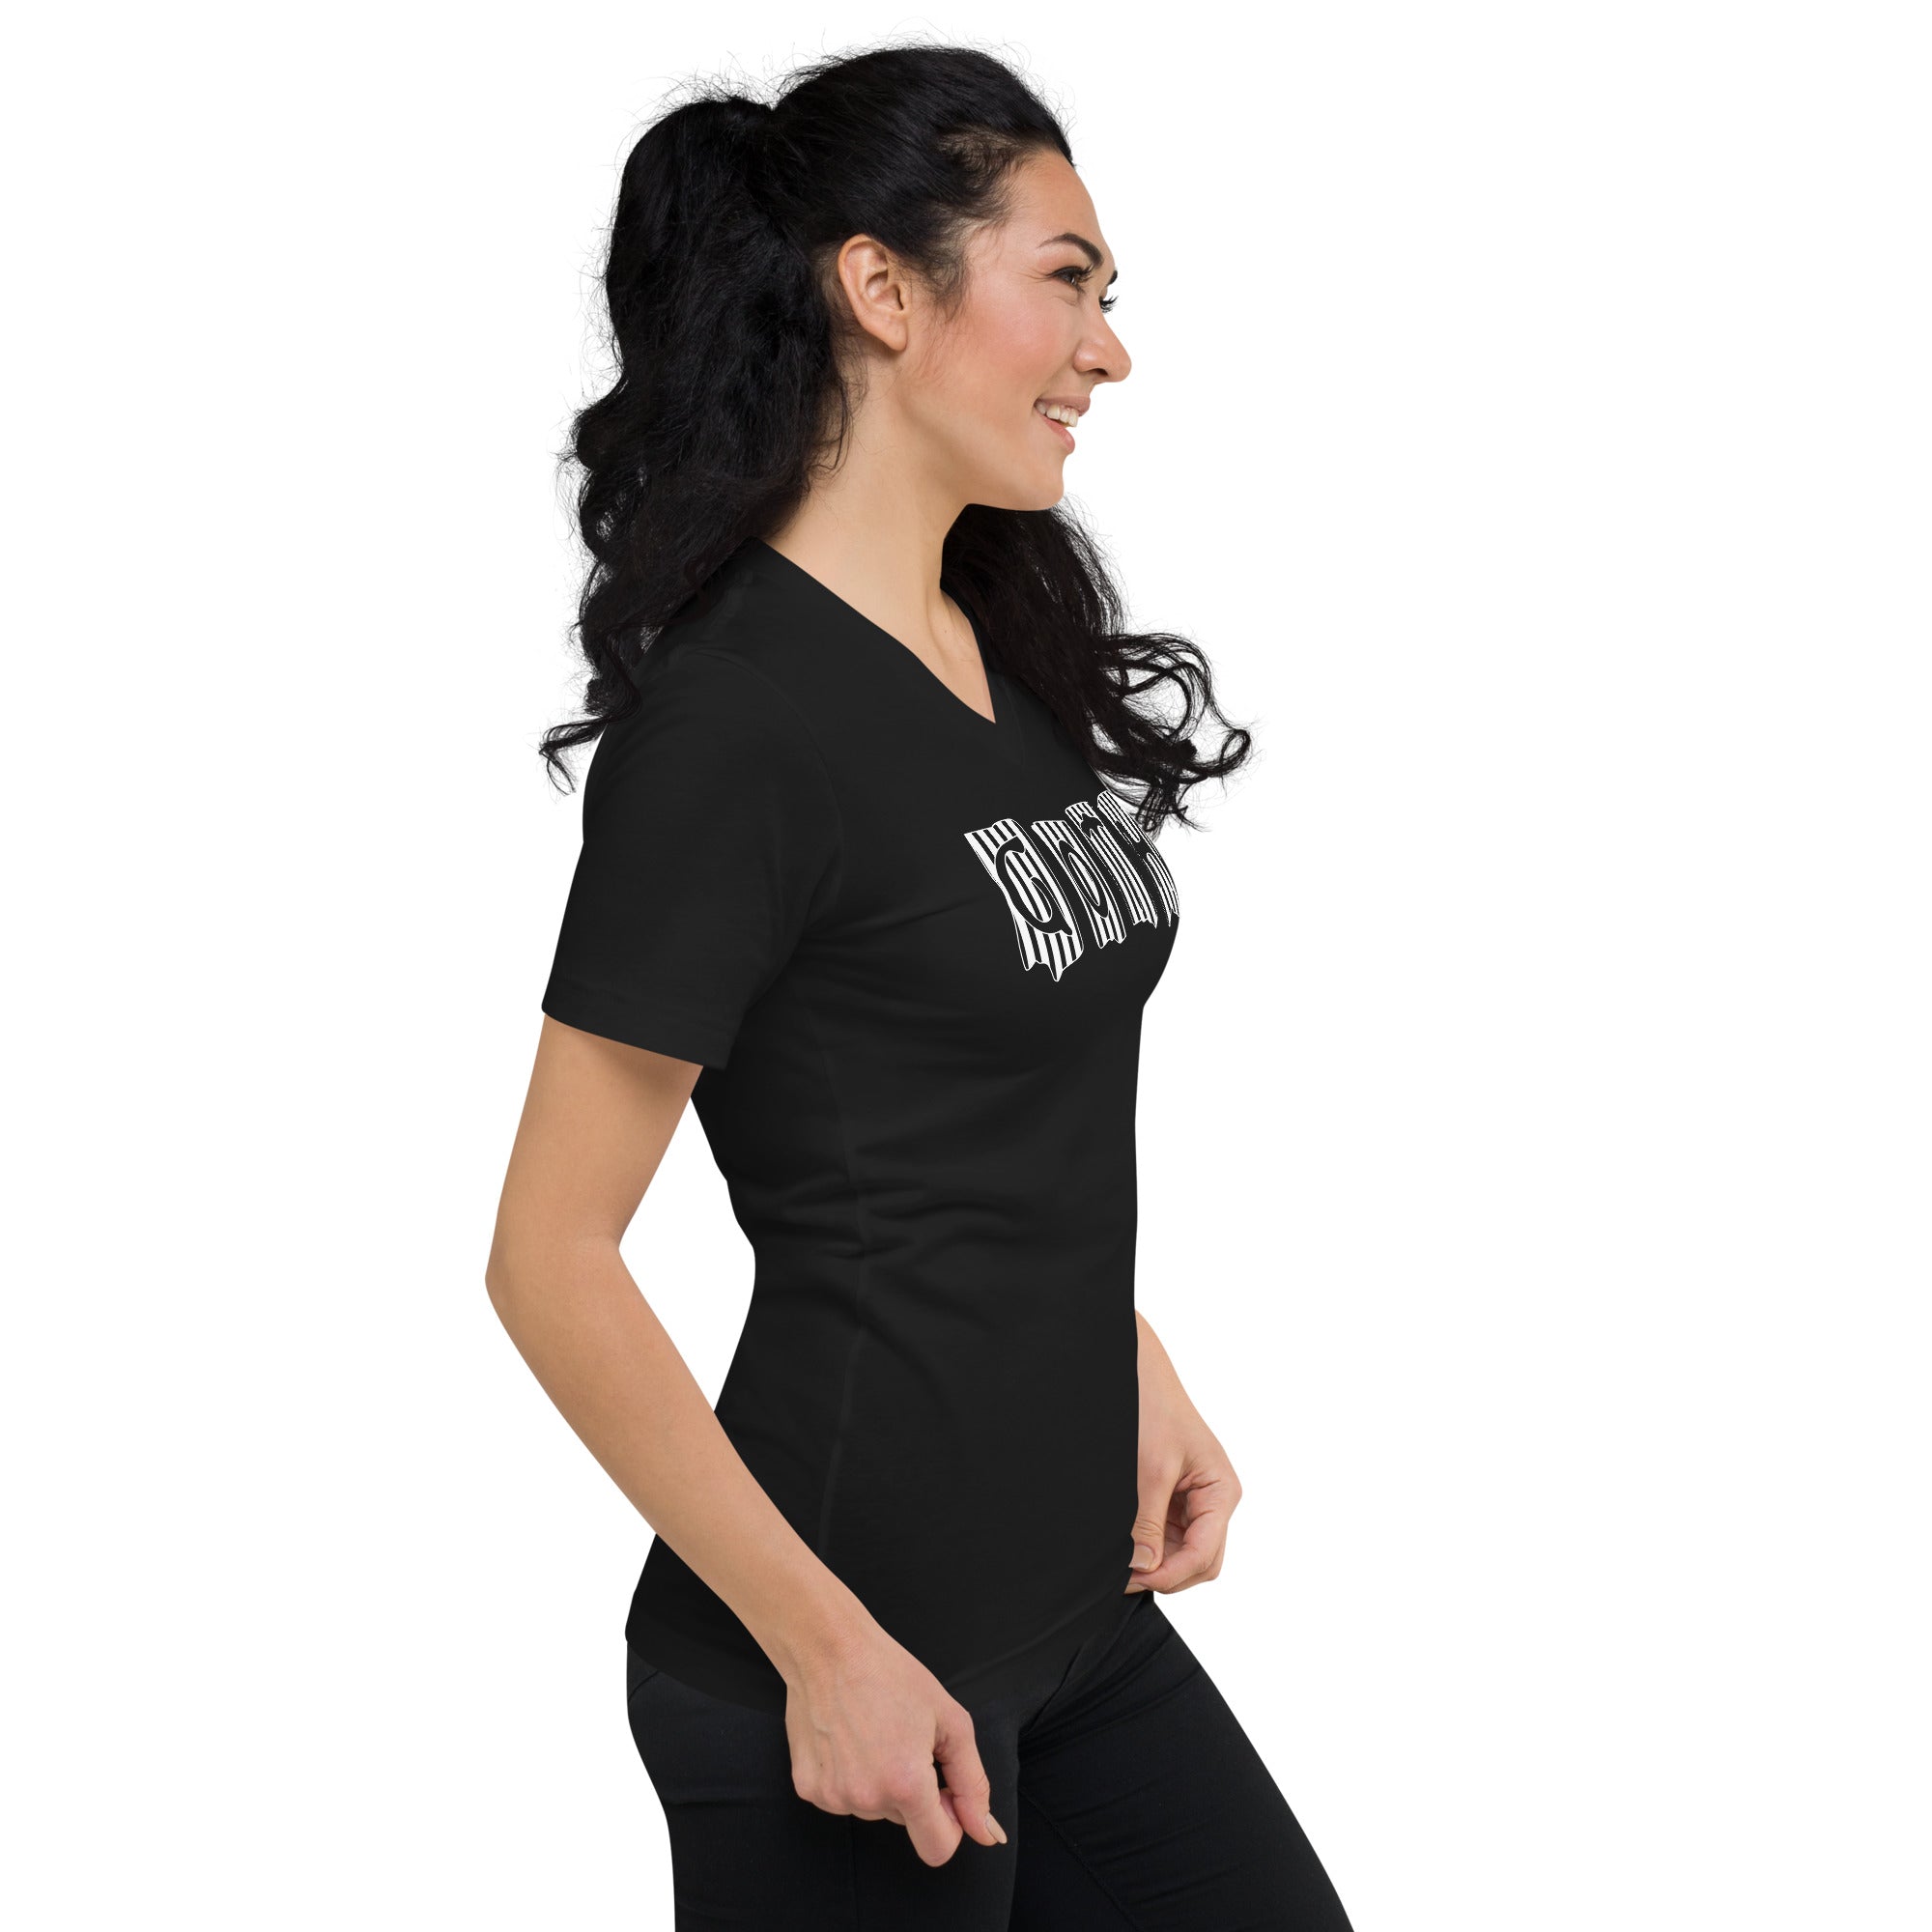 Black and White Vertical Stripe Goth Wallpaper Style Women’s Short Sleeve V-Neck T-Shirt